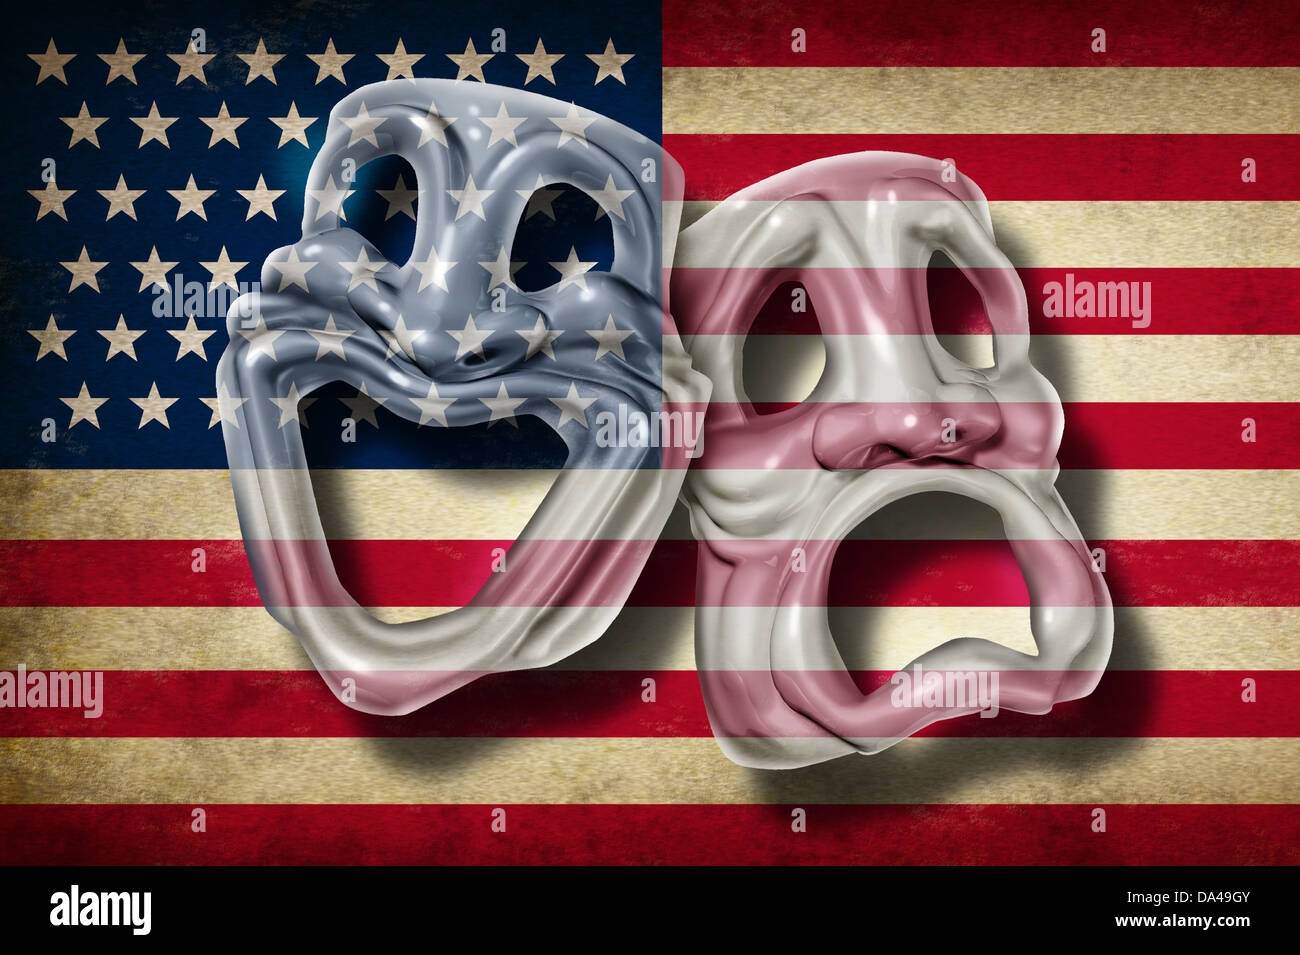 American Theatre de Broadway y concepto de artes escénicas con una vieja bandera de los Estados Unidos sobre una máscara de comedia y tragedia que representa la rica tradición cultural de cine clásico y la realización de películas en los Estados Unidos. Foto de stock